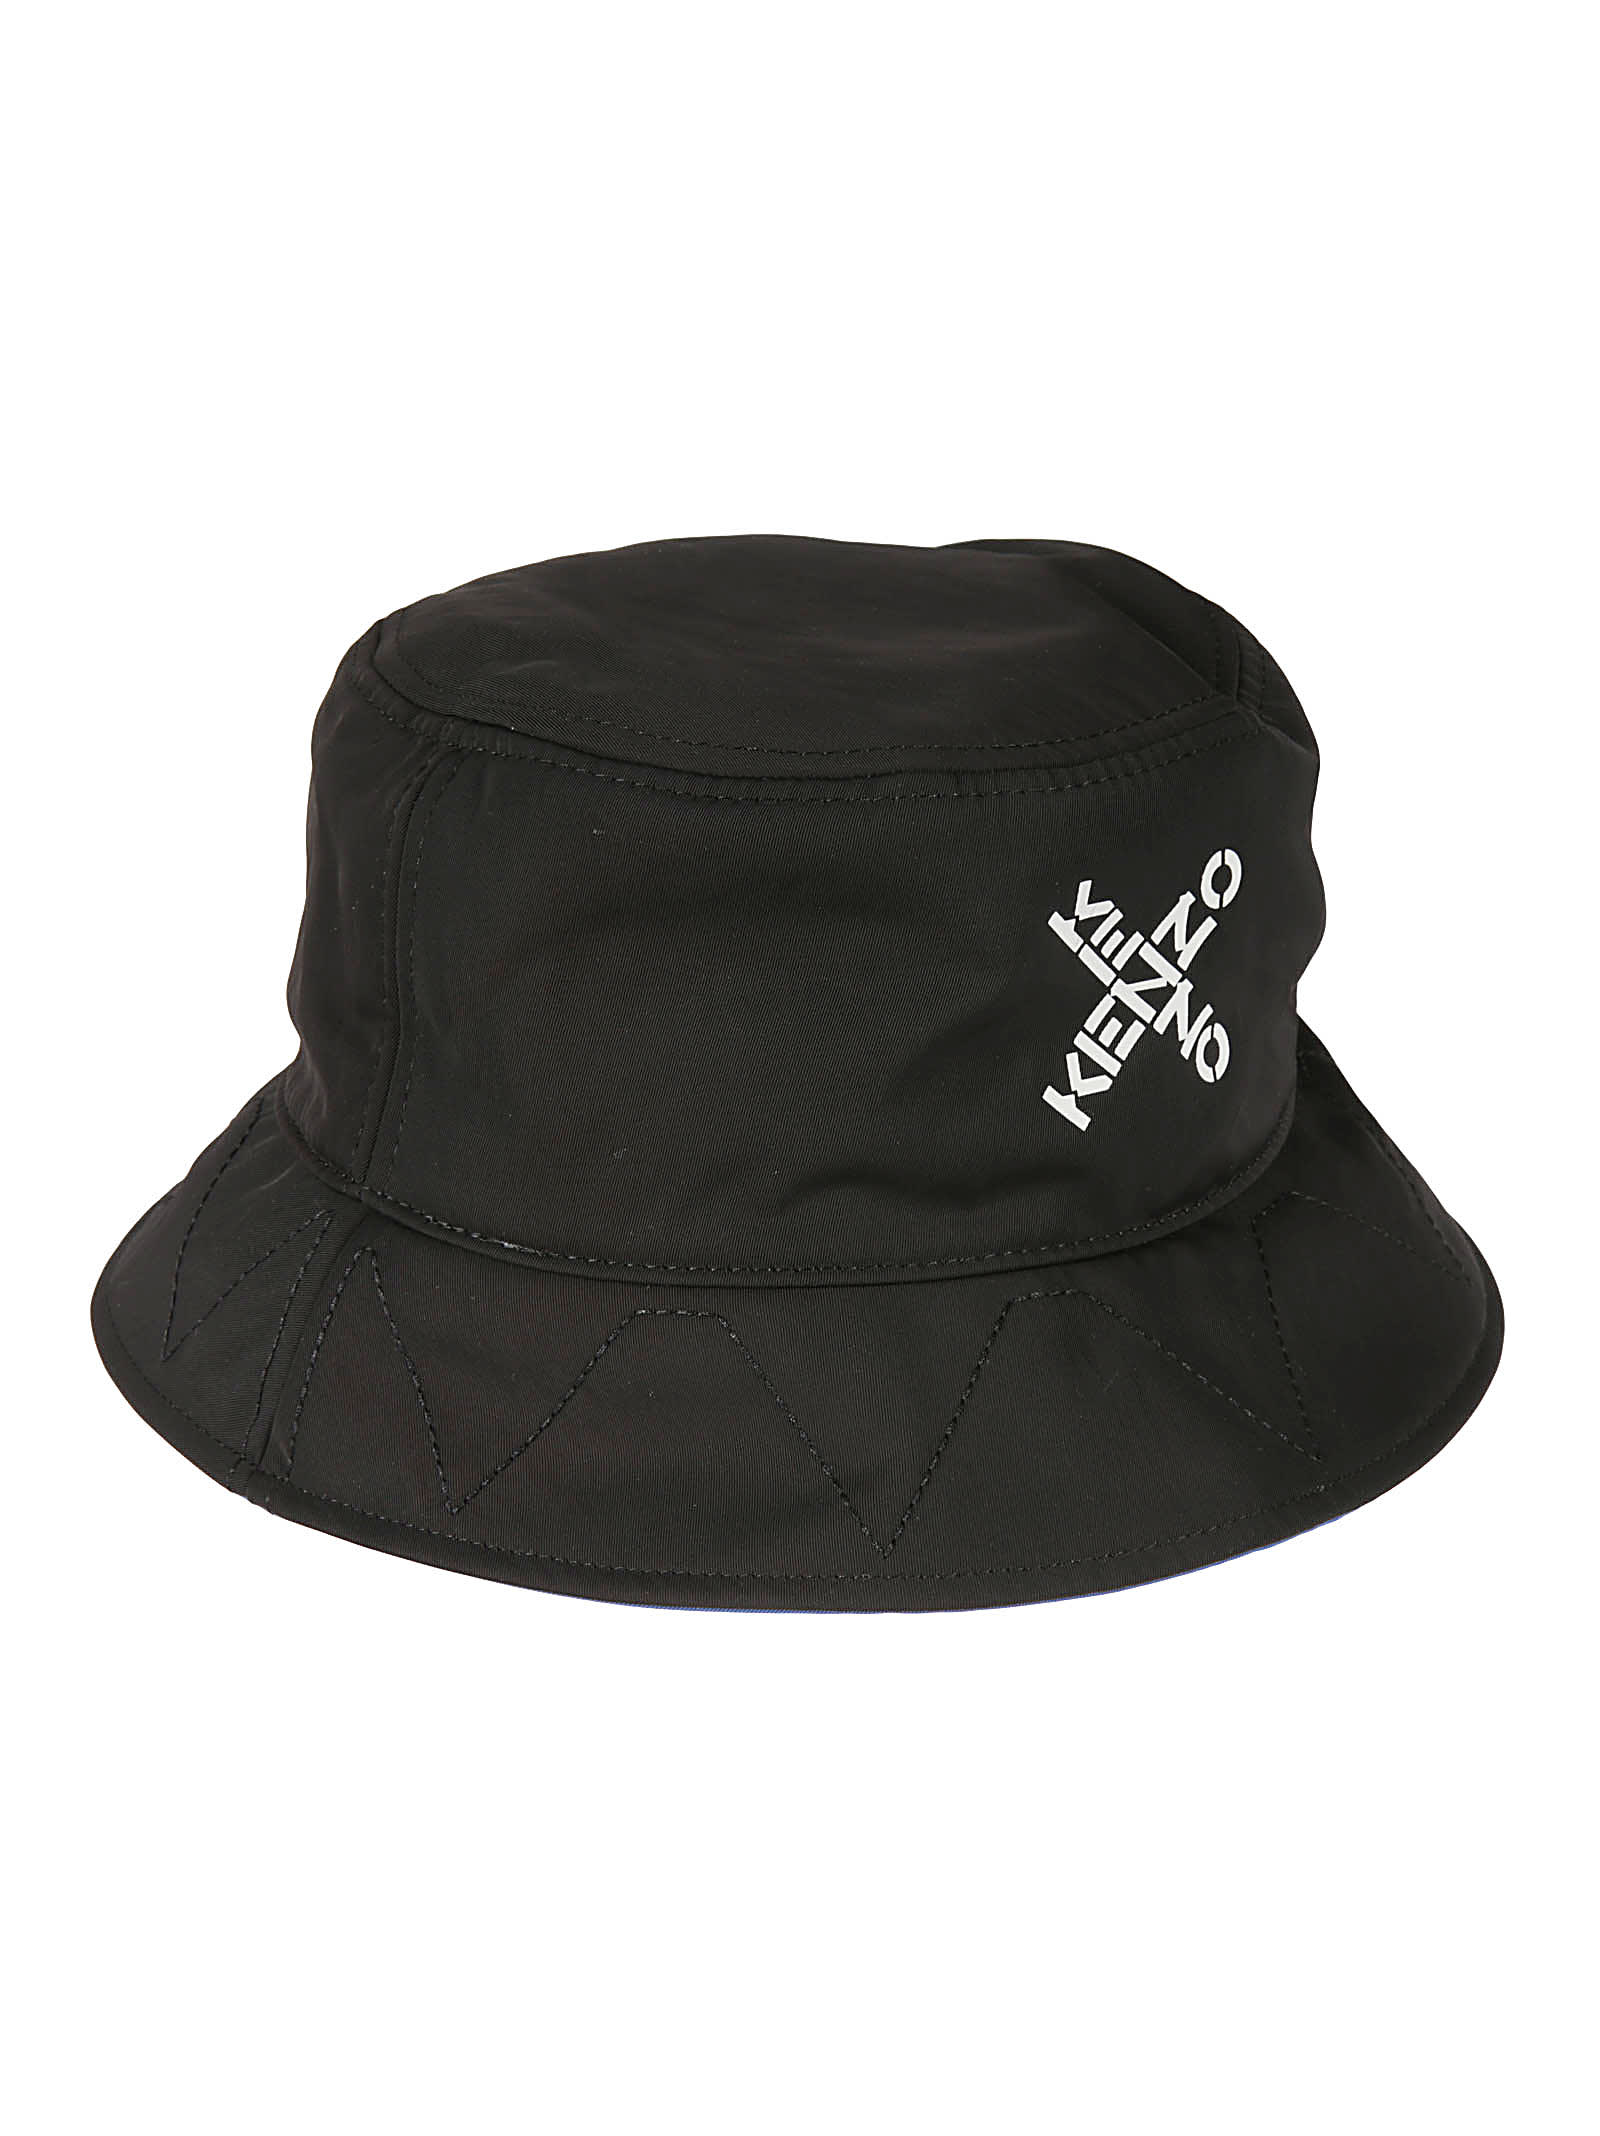 KENZO CROSS LOGO BUCKET HAT,11787526